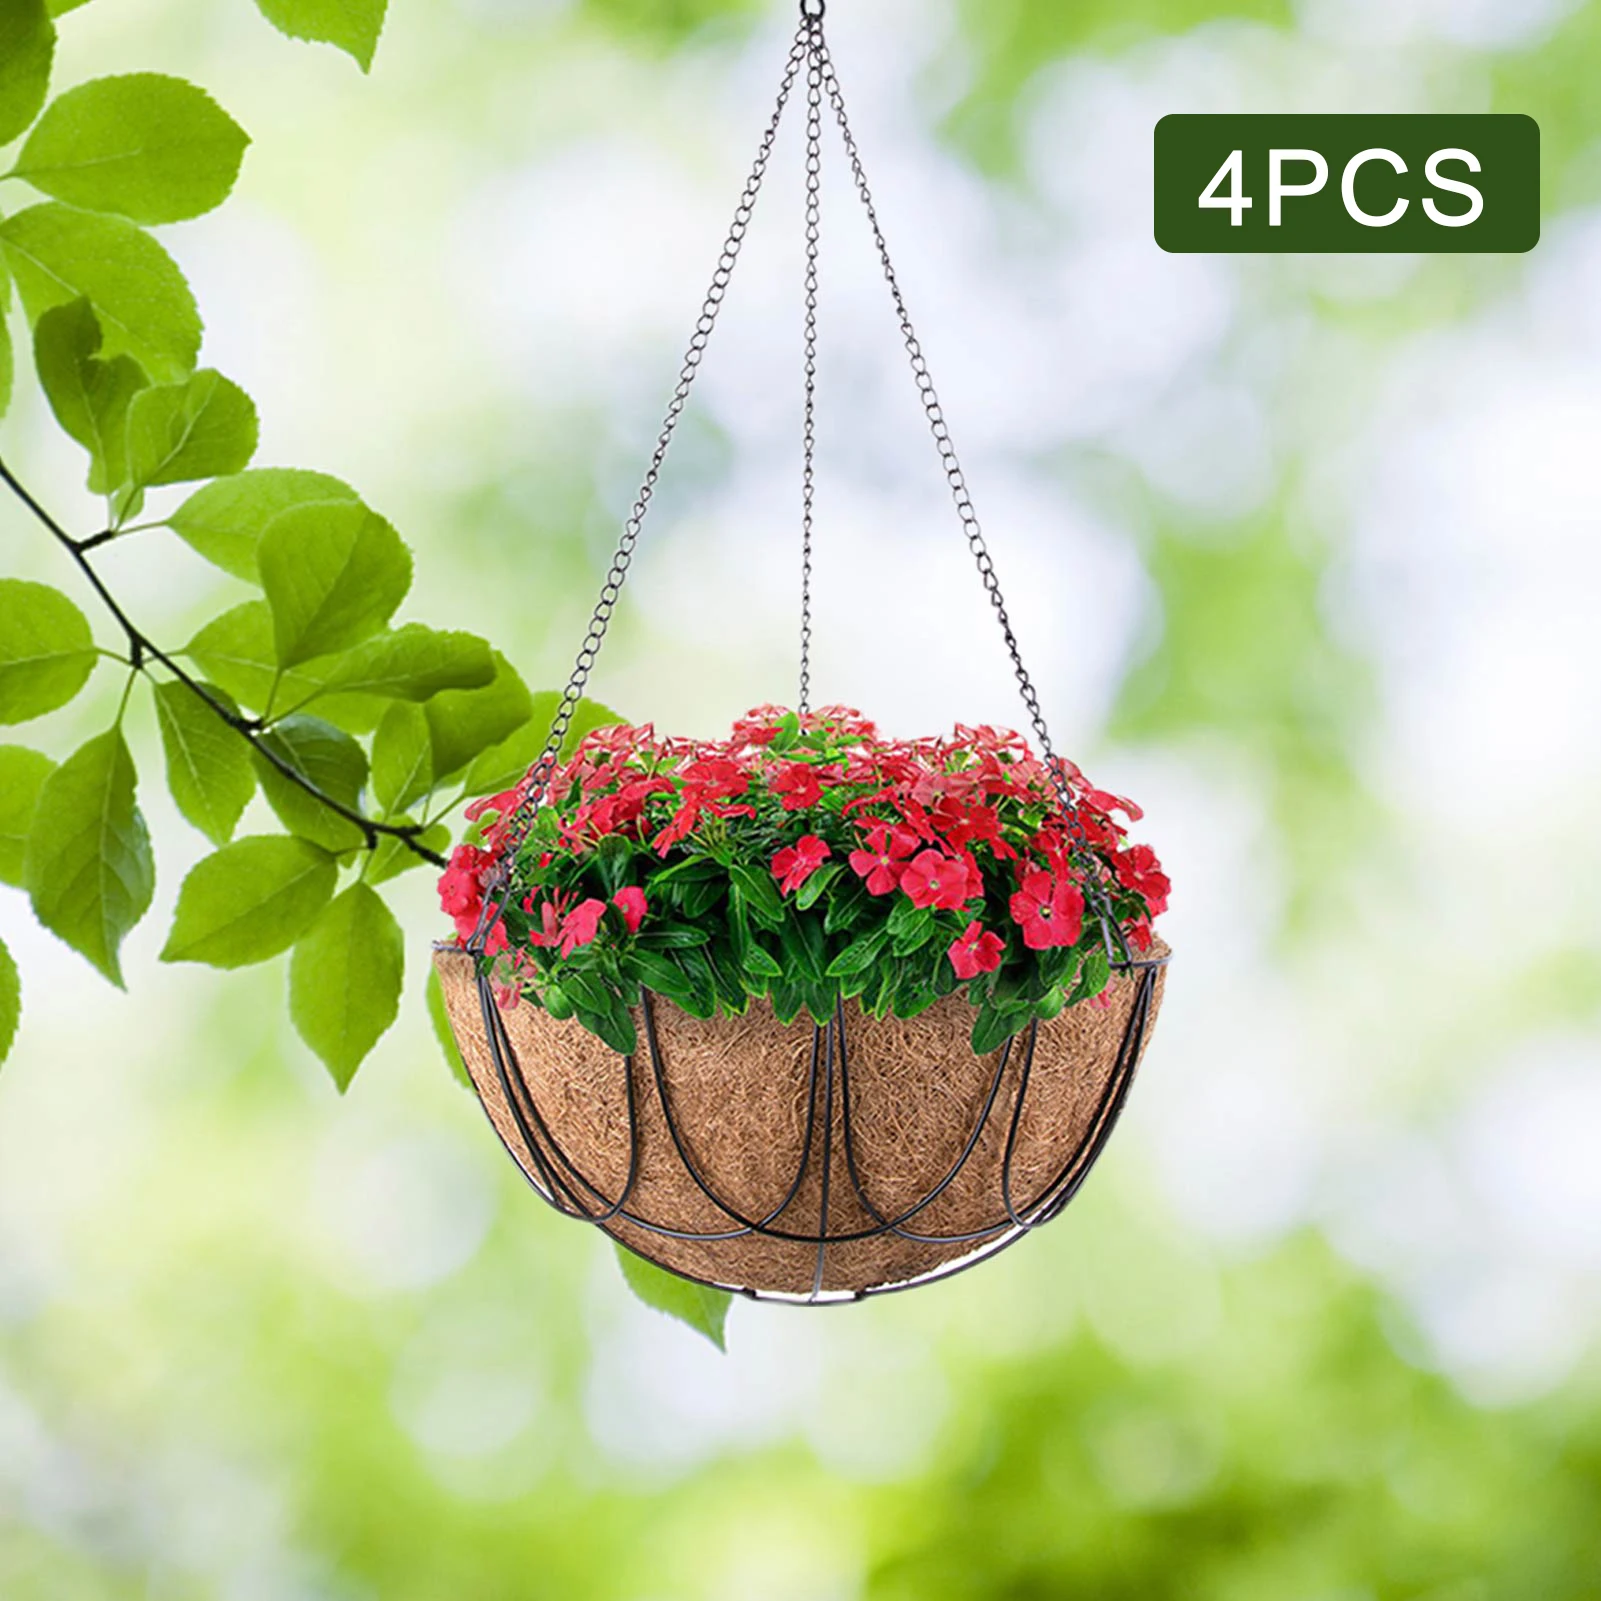 

4PCS Metal Hanging Planter Basket With Wrought Coconut Palm Flowerpot Hanger Rattan Pots Garden Planter Decorative